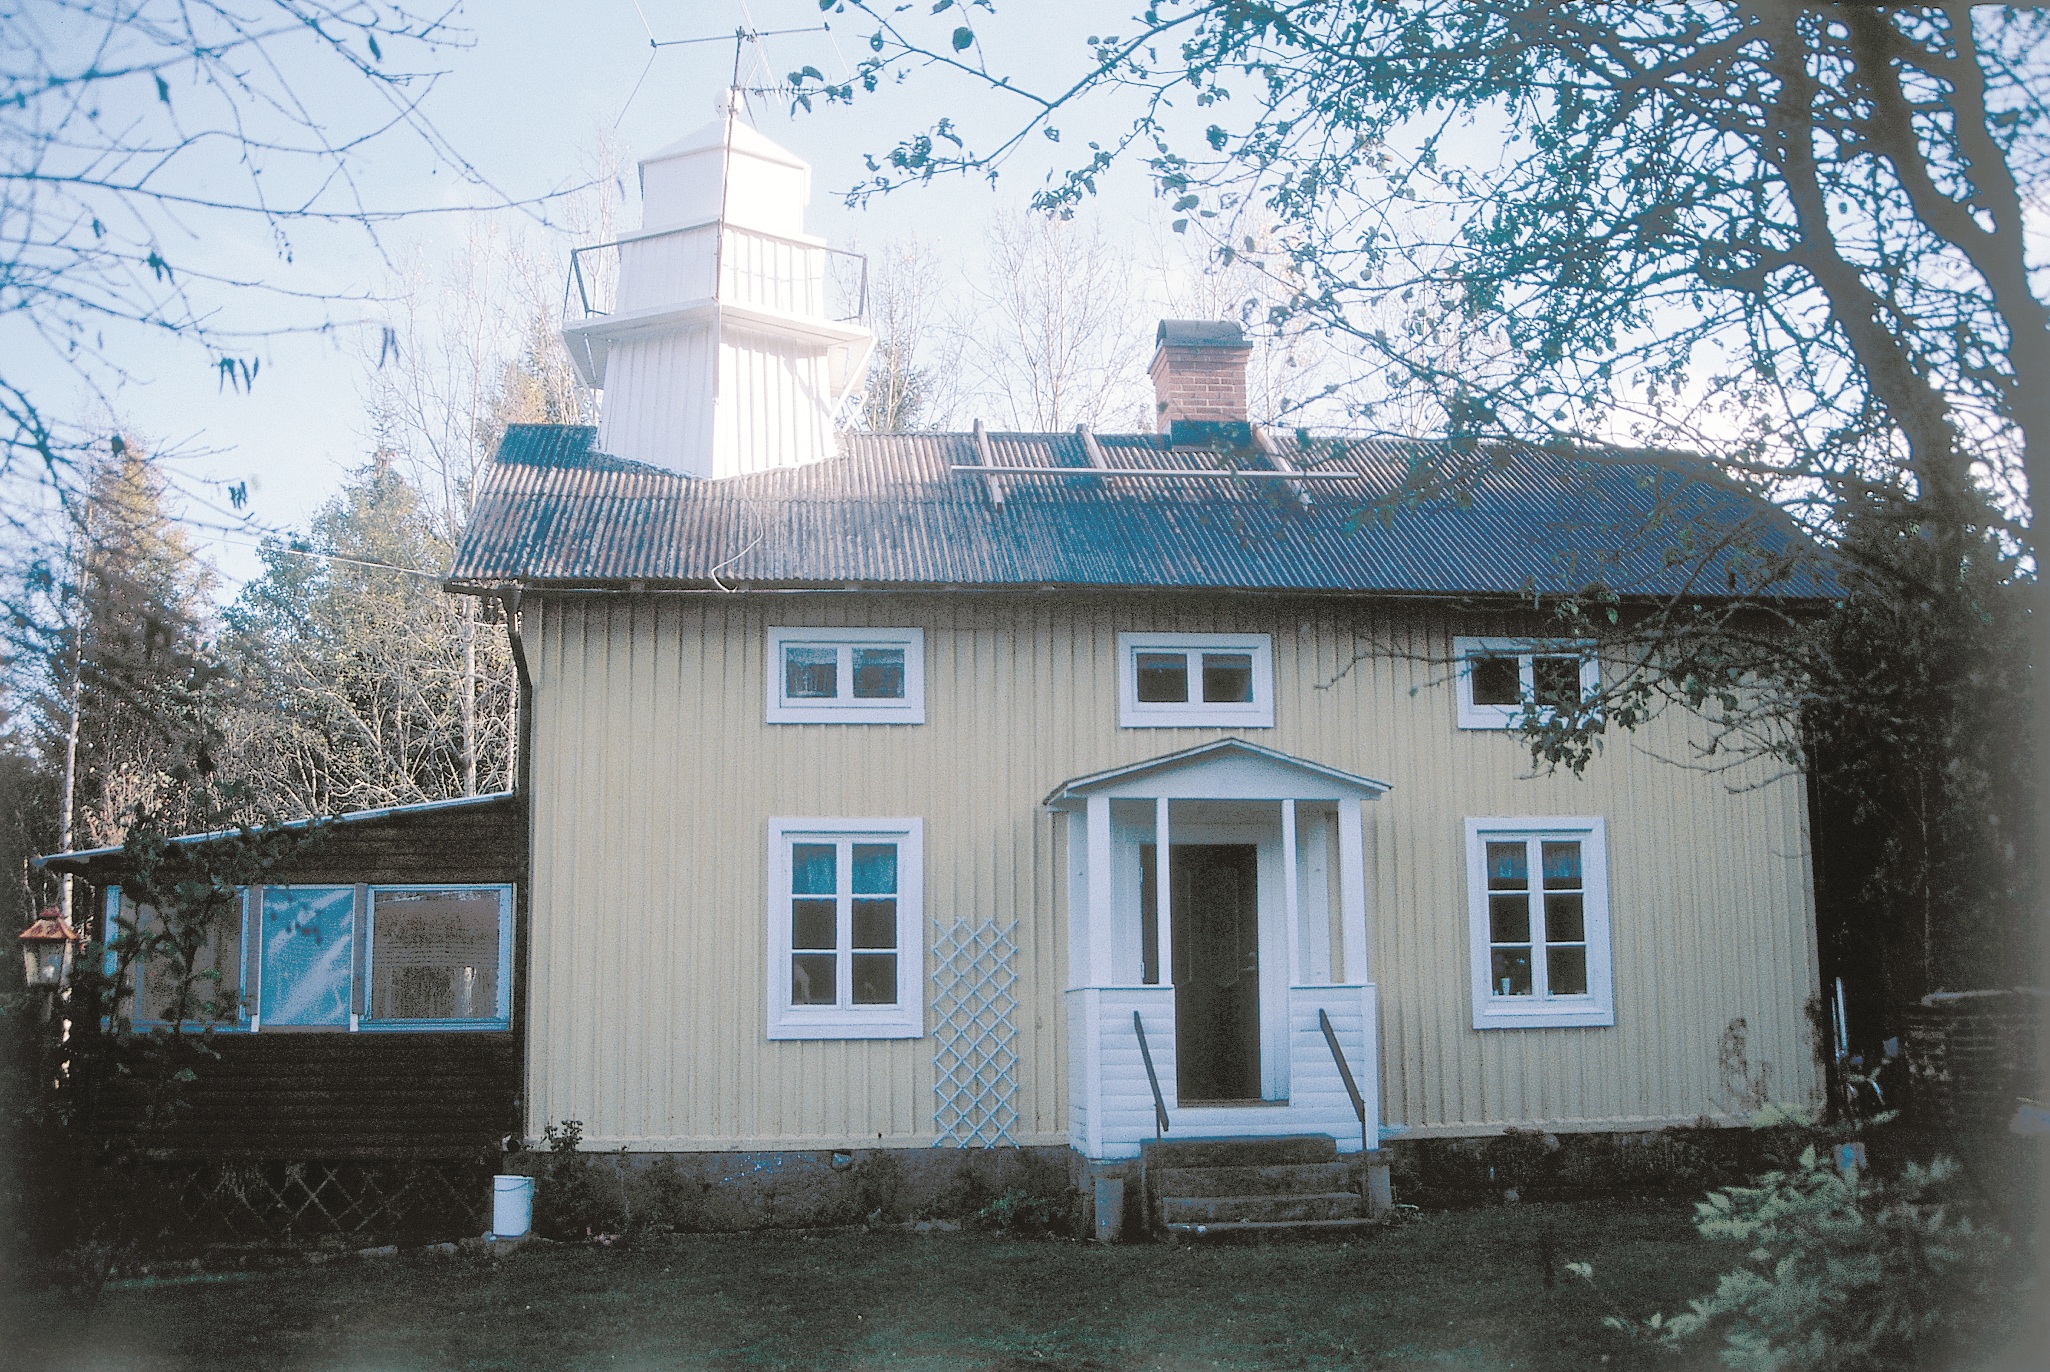 Fyrbostadshuset (f.d. övre fyren) från 1902 har bl.a. ursprunglig fasad av profi lerad locklistpanel, samt spröjsade tvåluftsfönster. Fasaden var från början vitmålad, nu gulmålad.